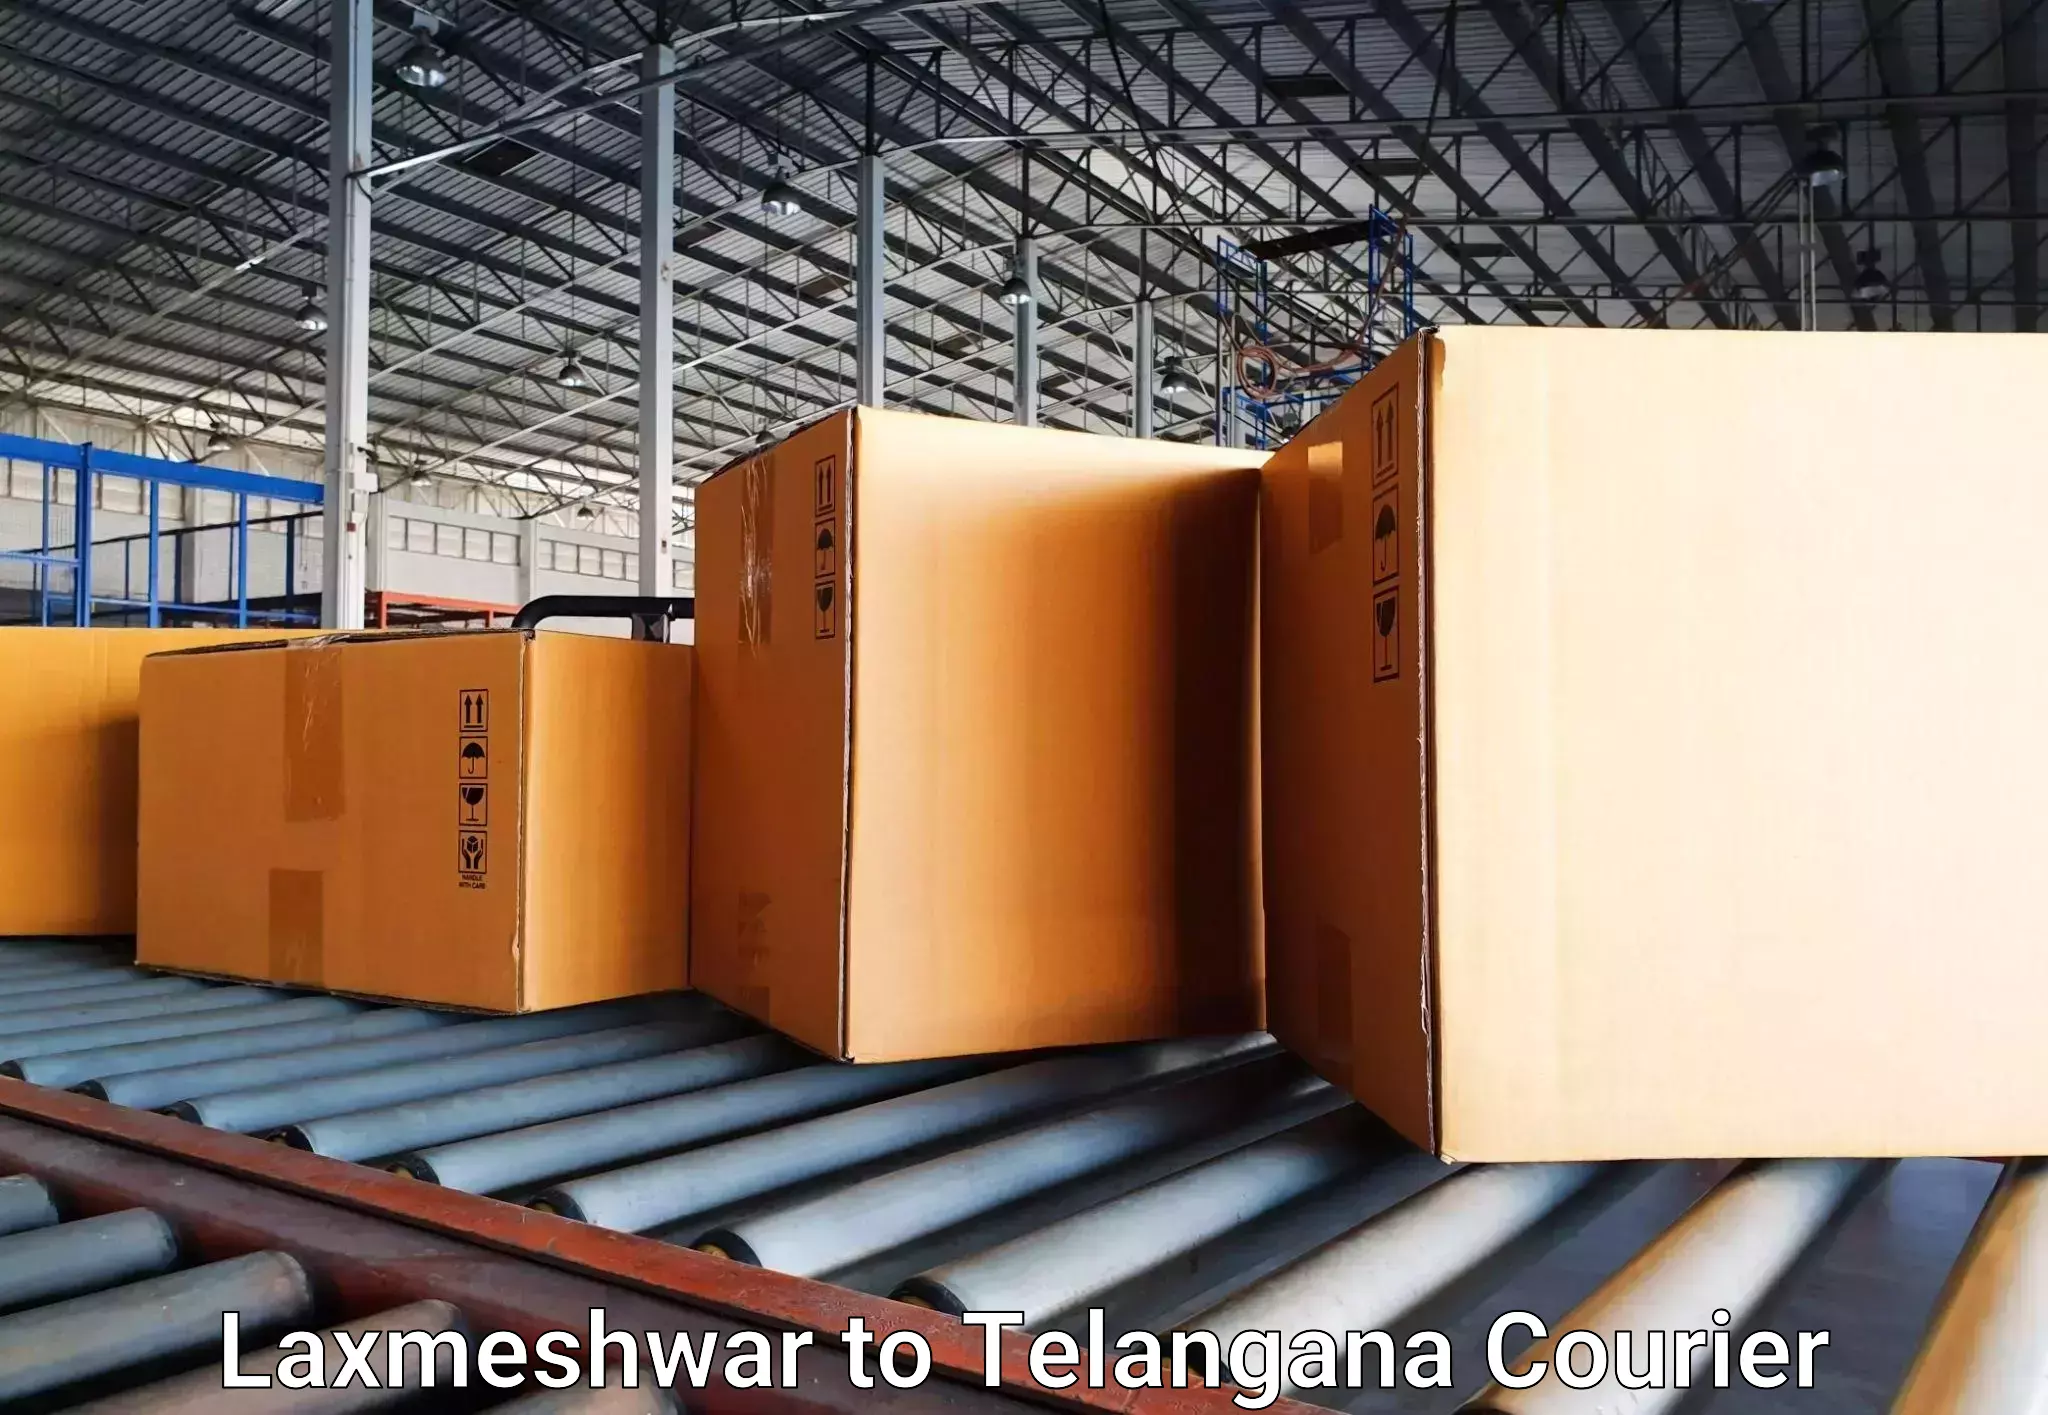 Luggage transport solutions Laxmeshwar to Sadashivpet